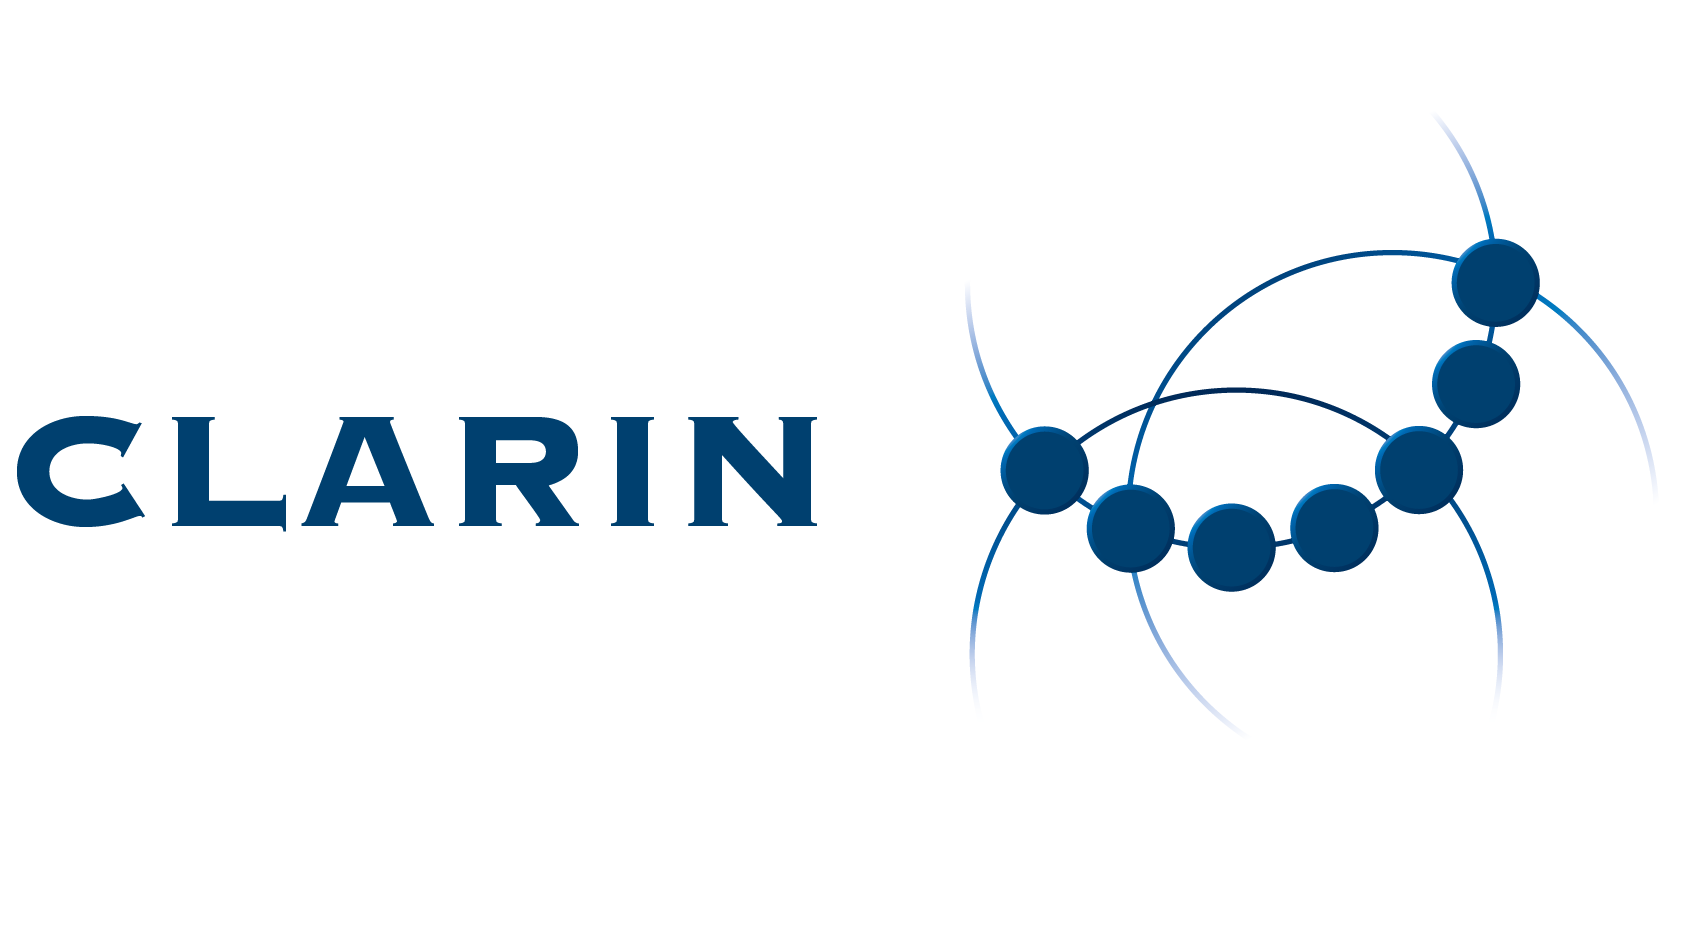 CLARIN ERIC logo